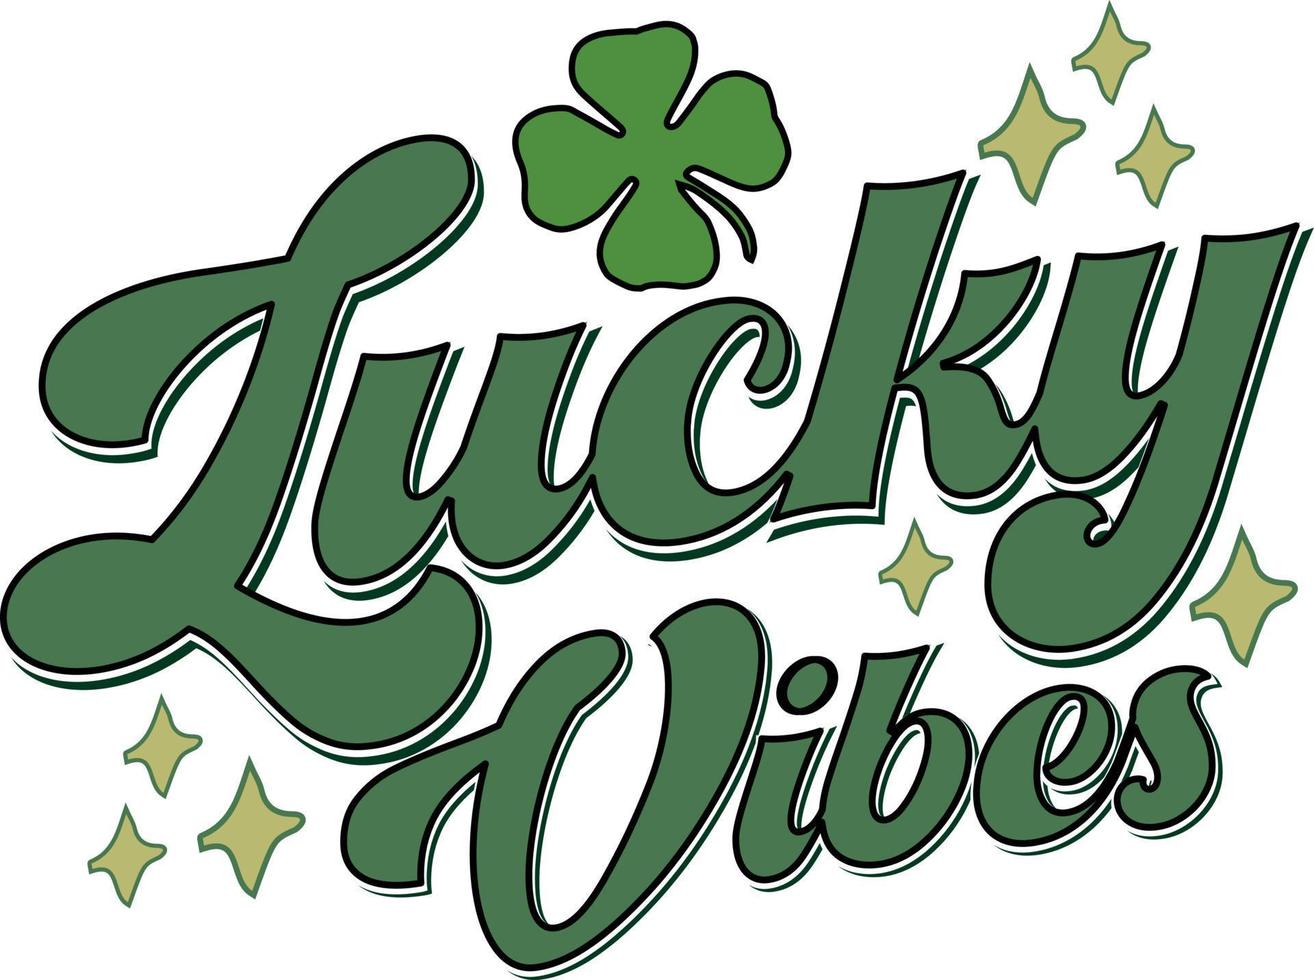 vibes suerte trébol del día de san patricio retro mujeres afortunadas diseño de camiseta irlandesa vector